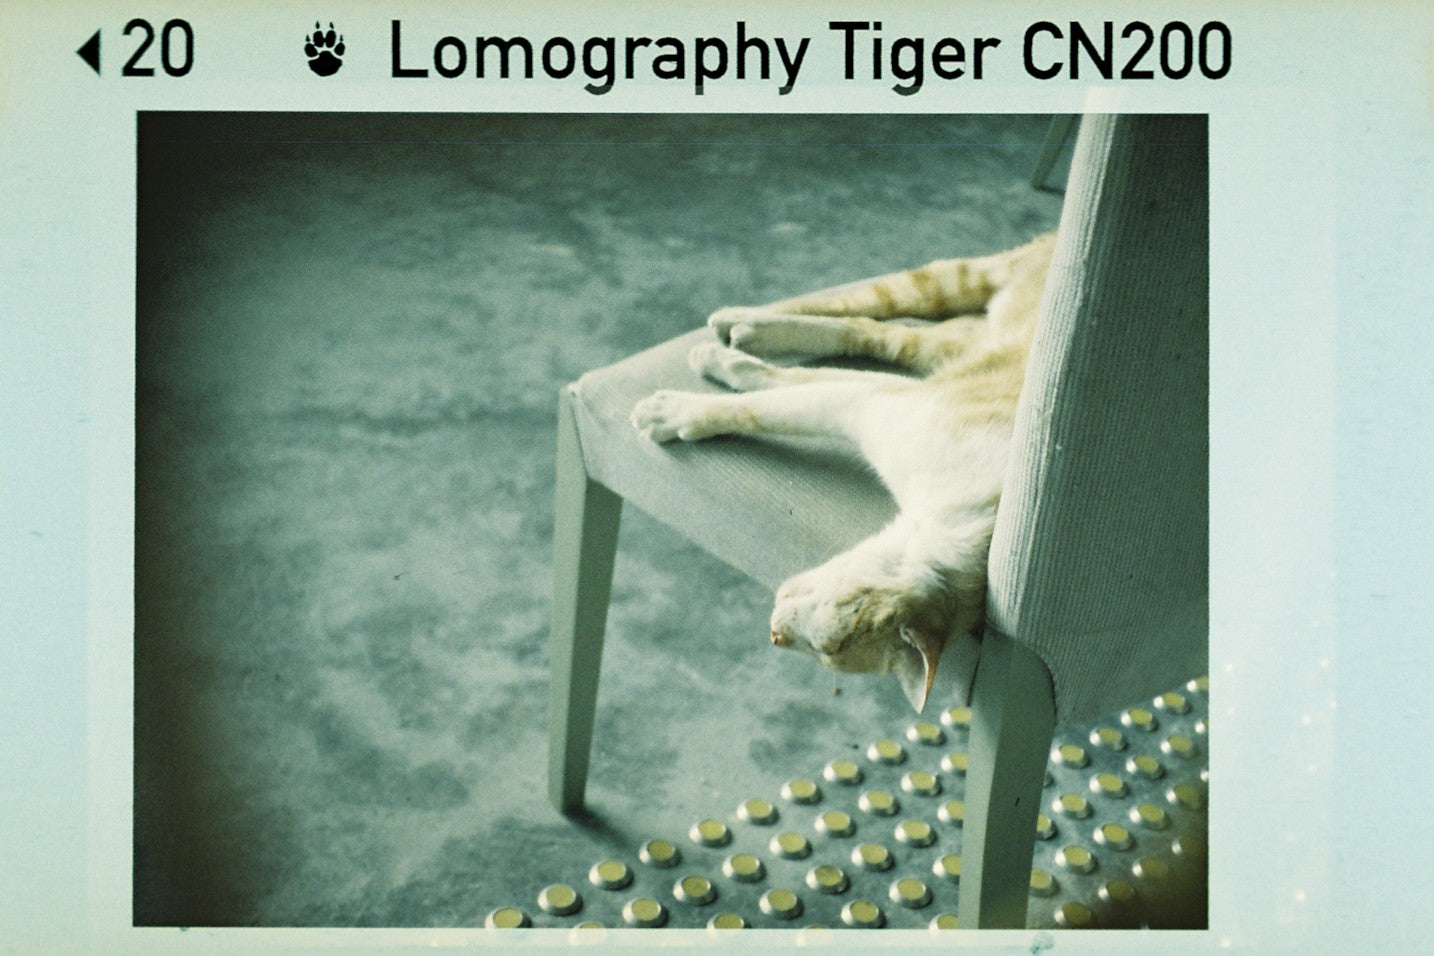 Pack of 3 Lomography Color Tiger 200 110mm